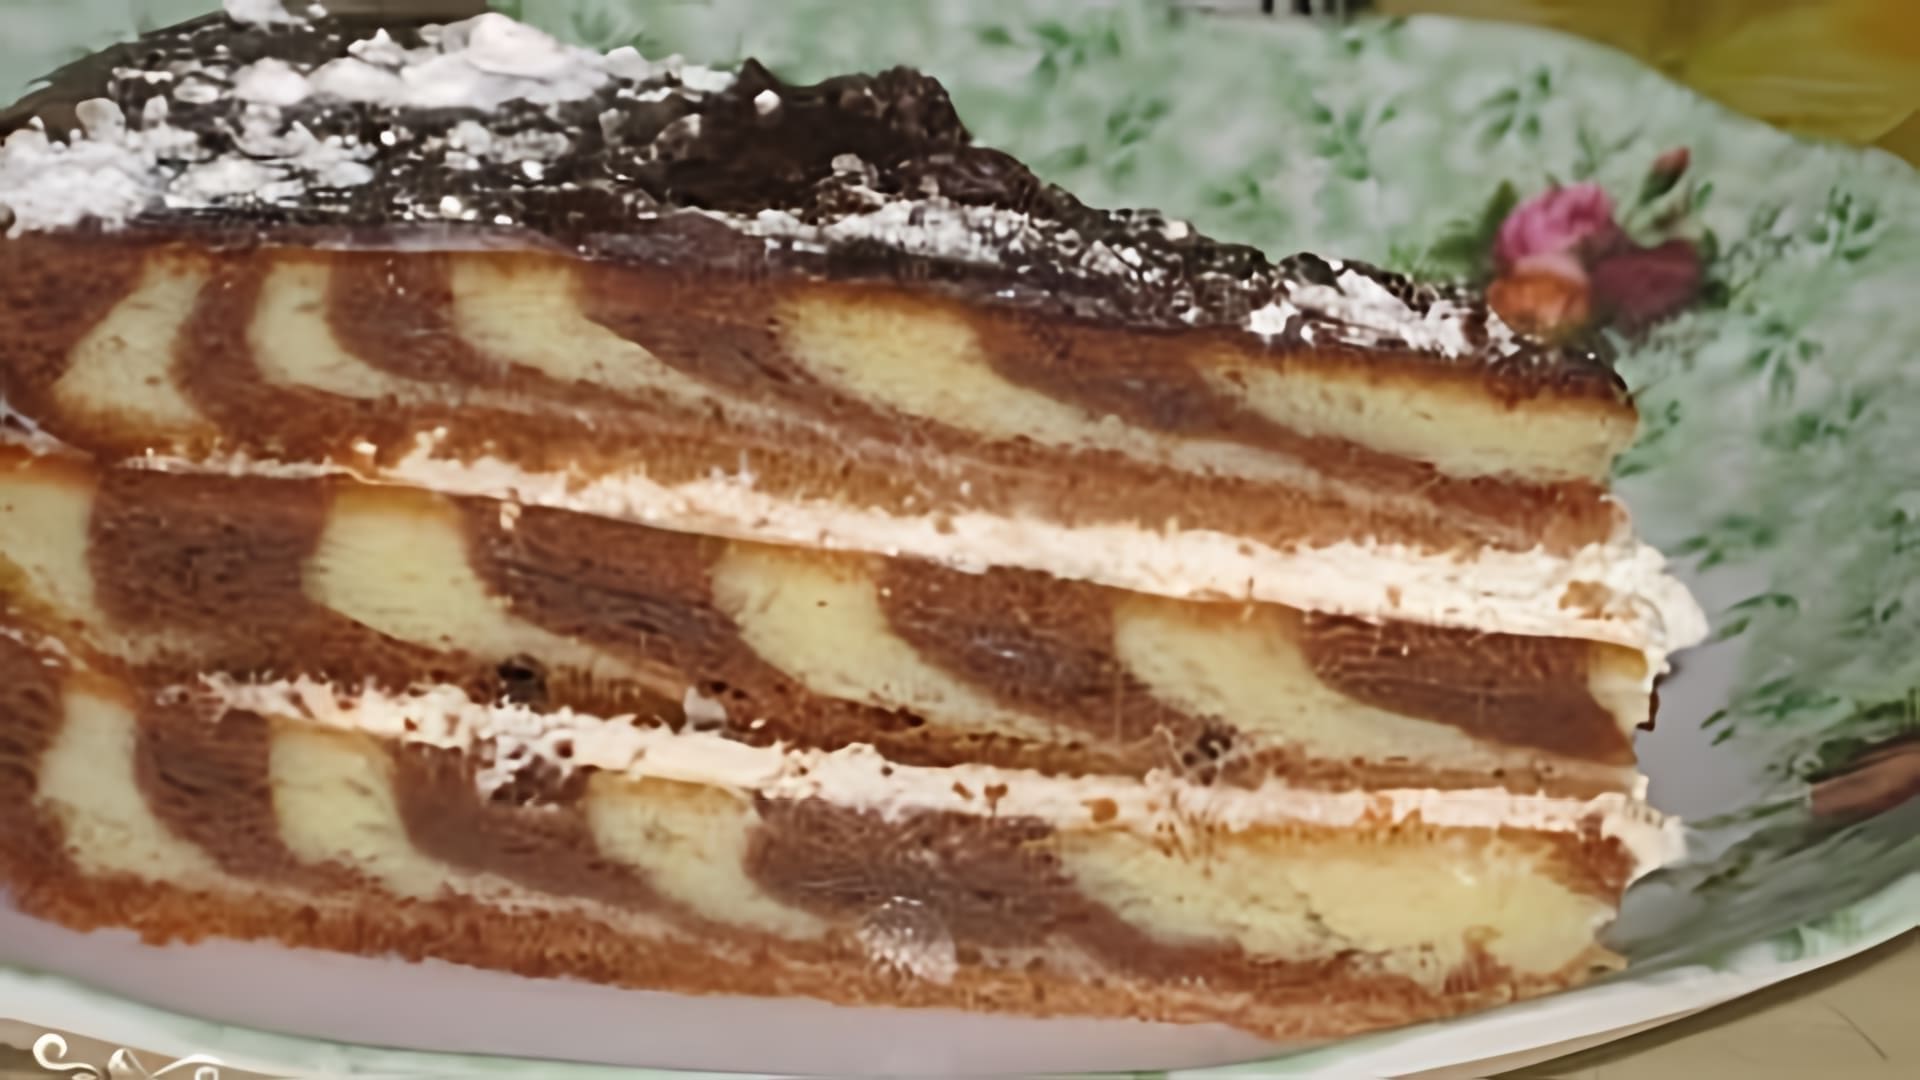 В данном видео представлен рецепт приготовления торта "Зебра" классический рецепт со сметанным кремом